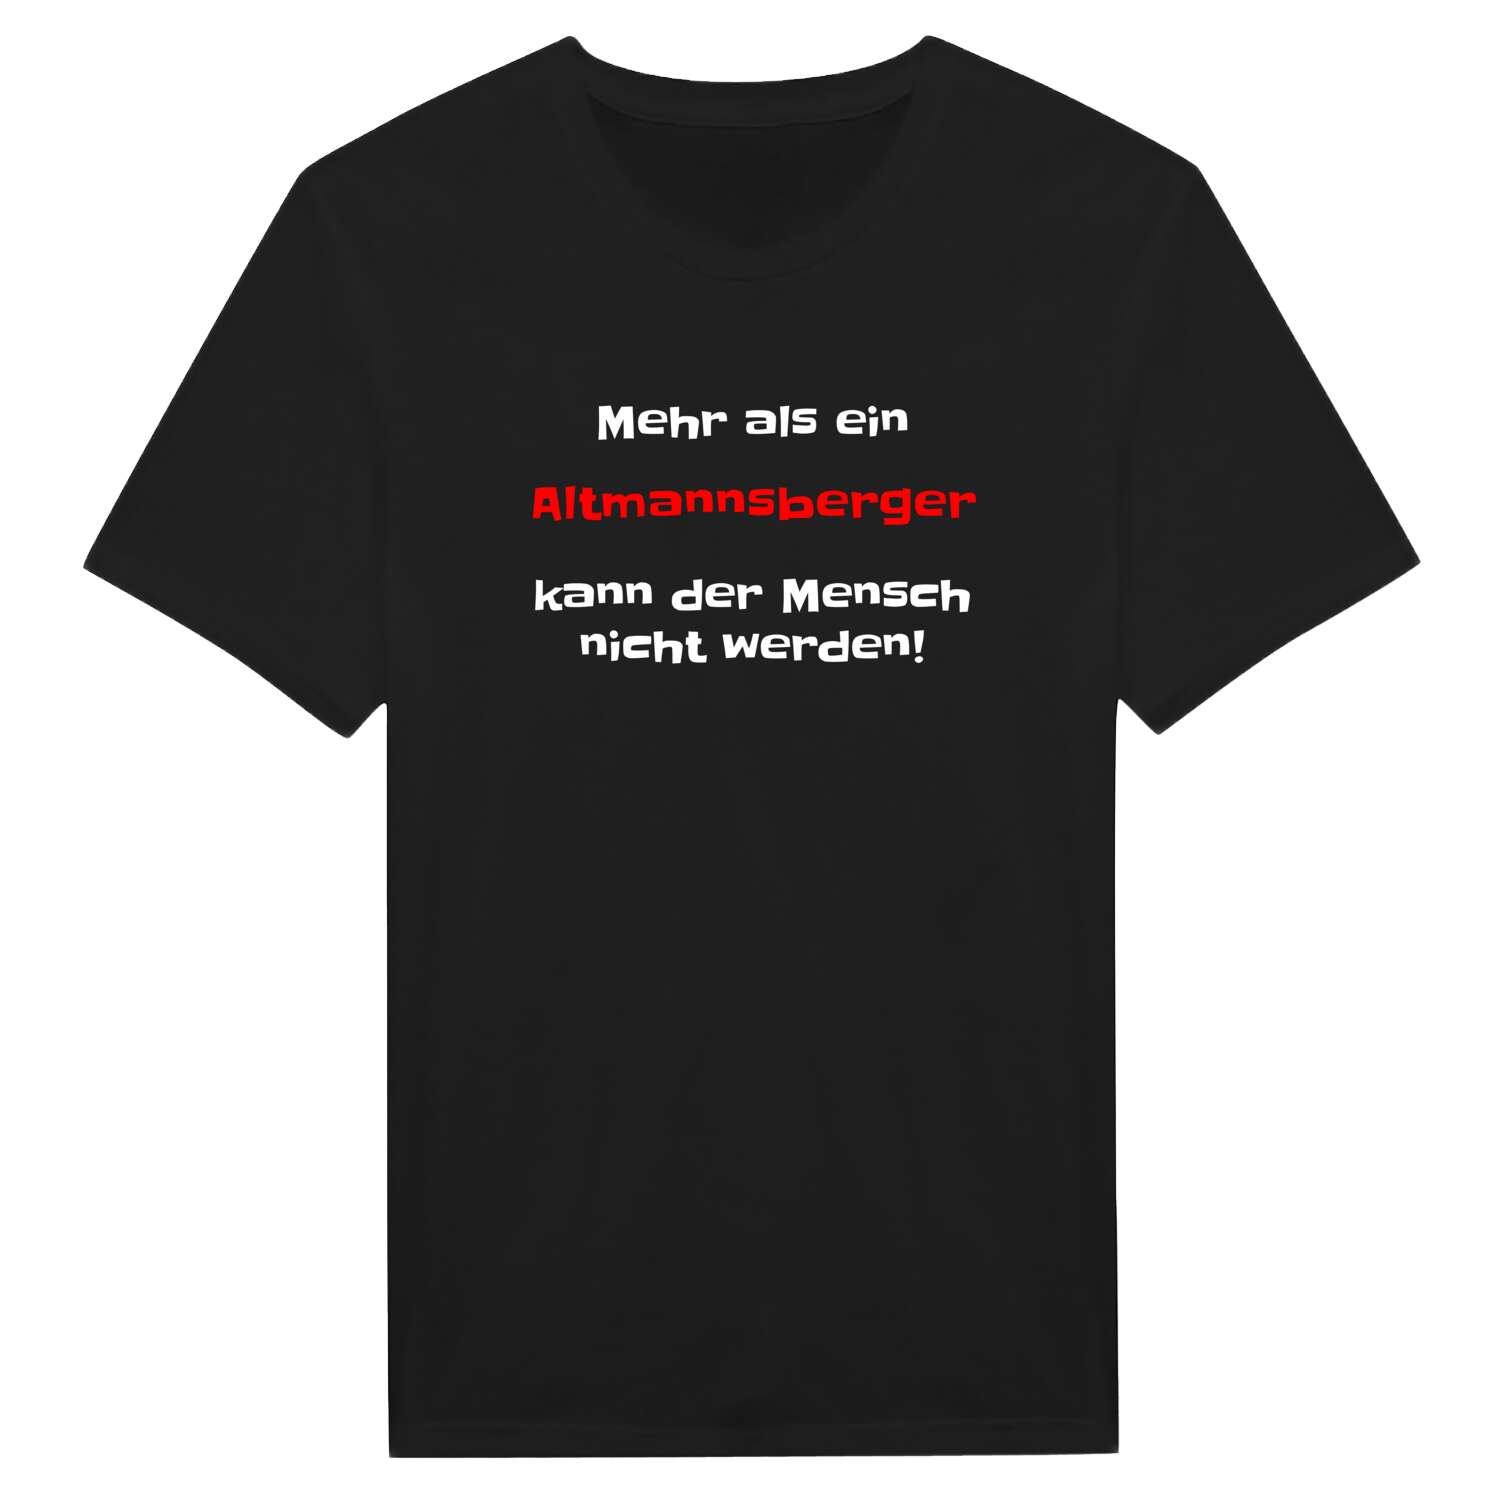 Altmannsberg T-Shirt »Mehr als ein«